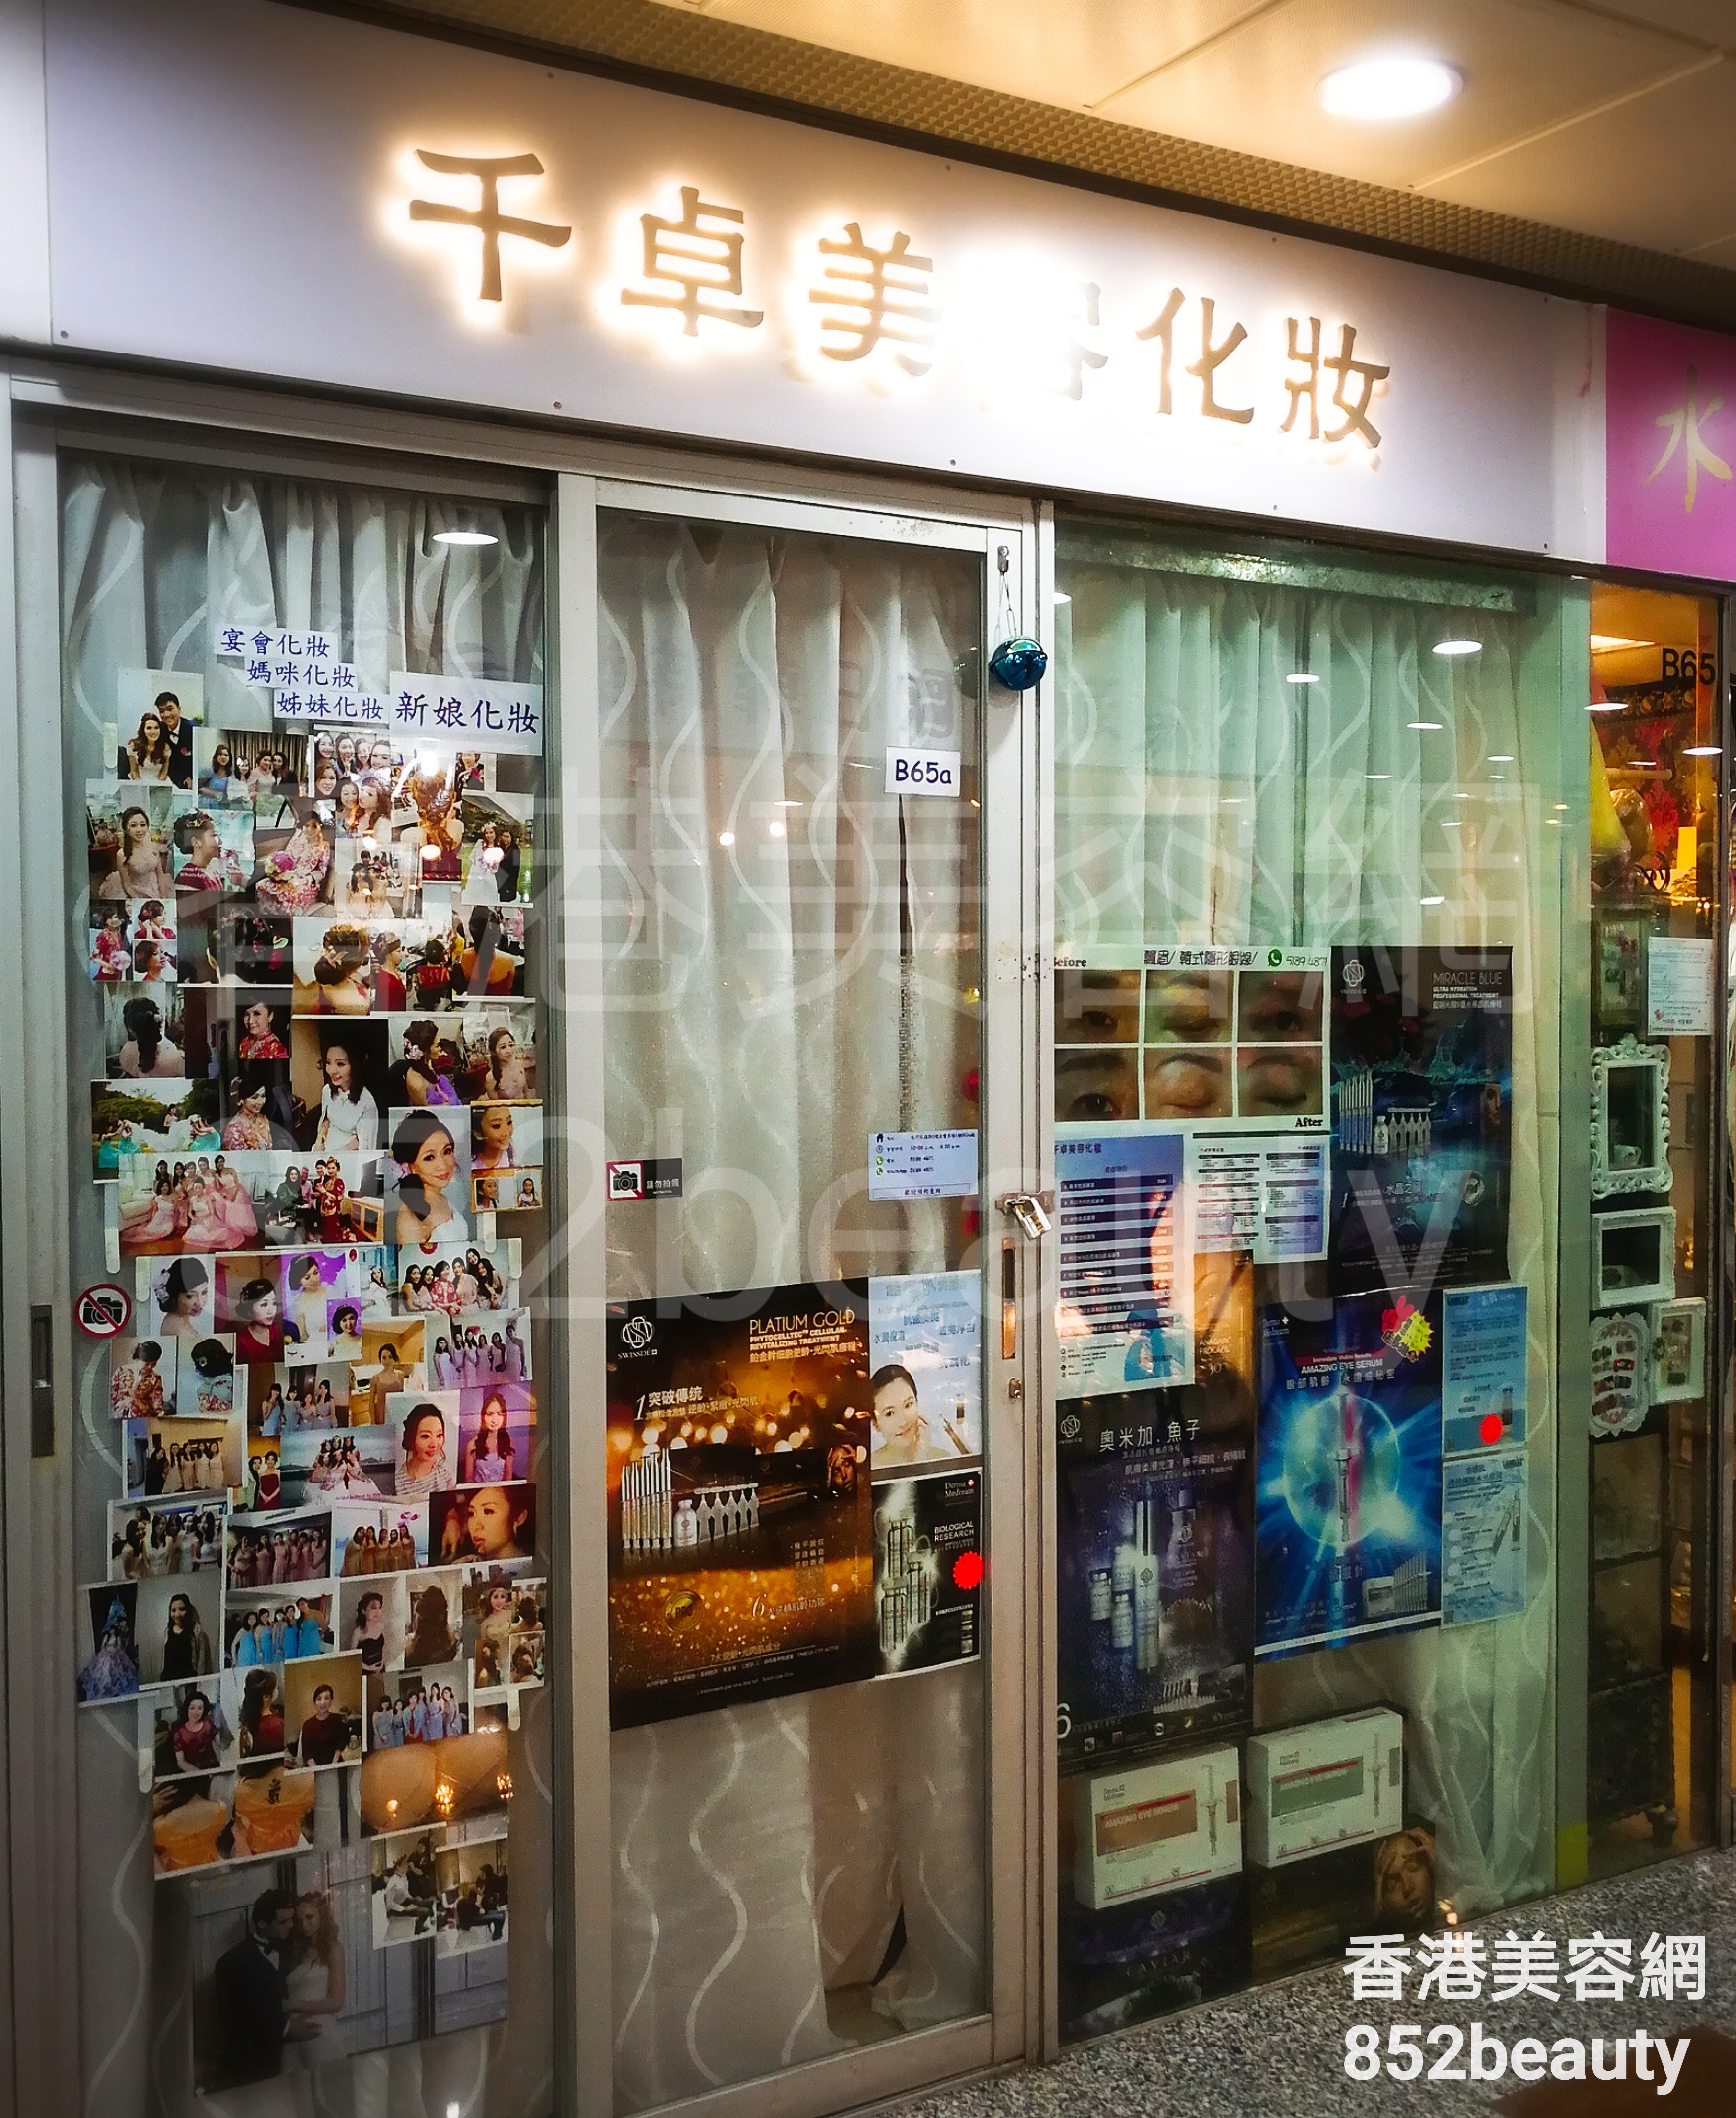 香港美容網 Hong Kong Beauty Salon 美容院 / 美容師: 千卓美容化妝